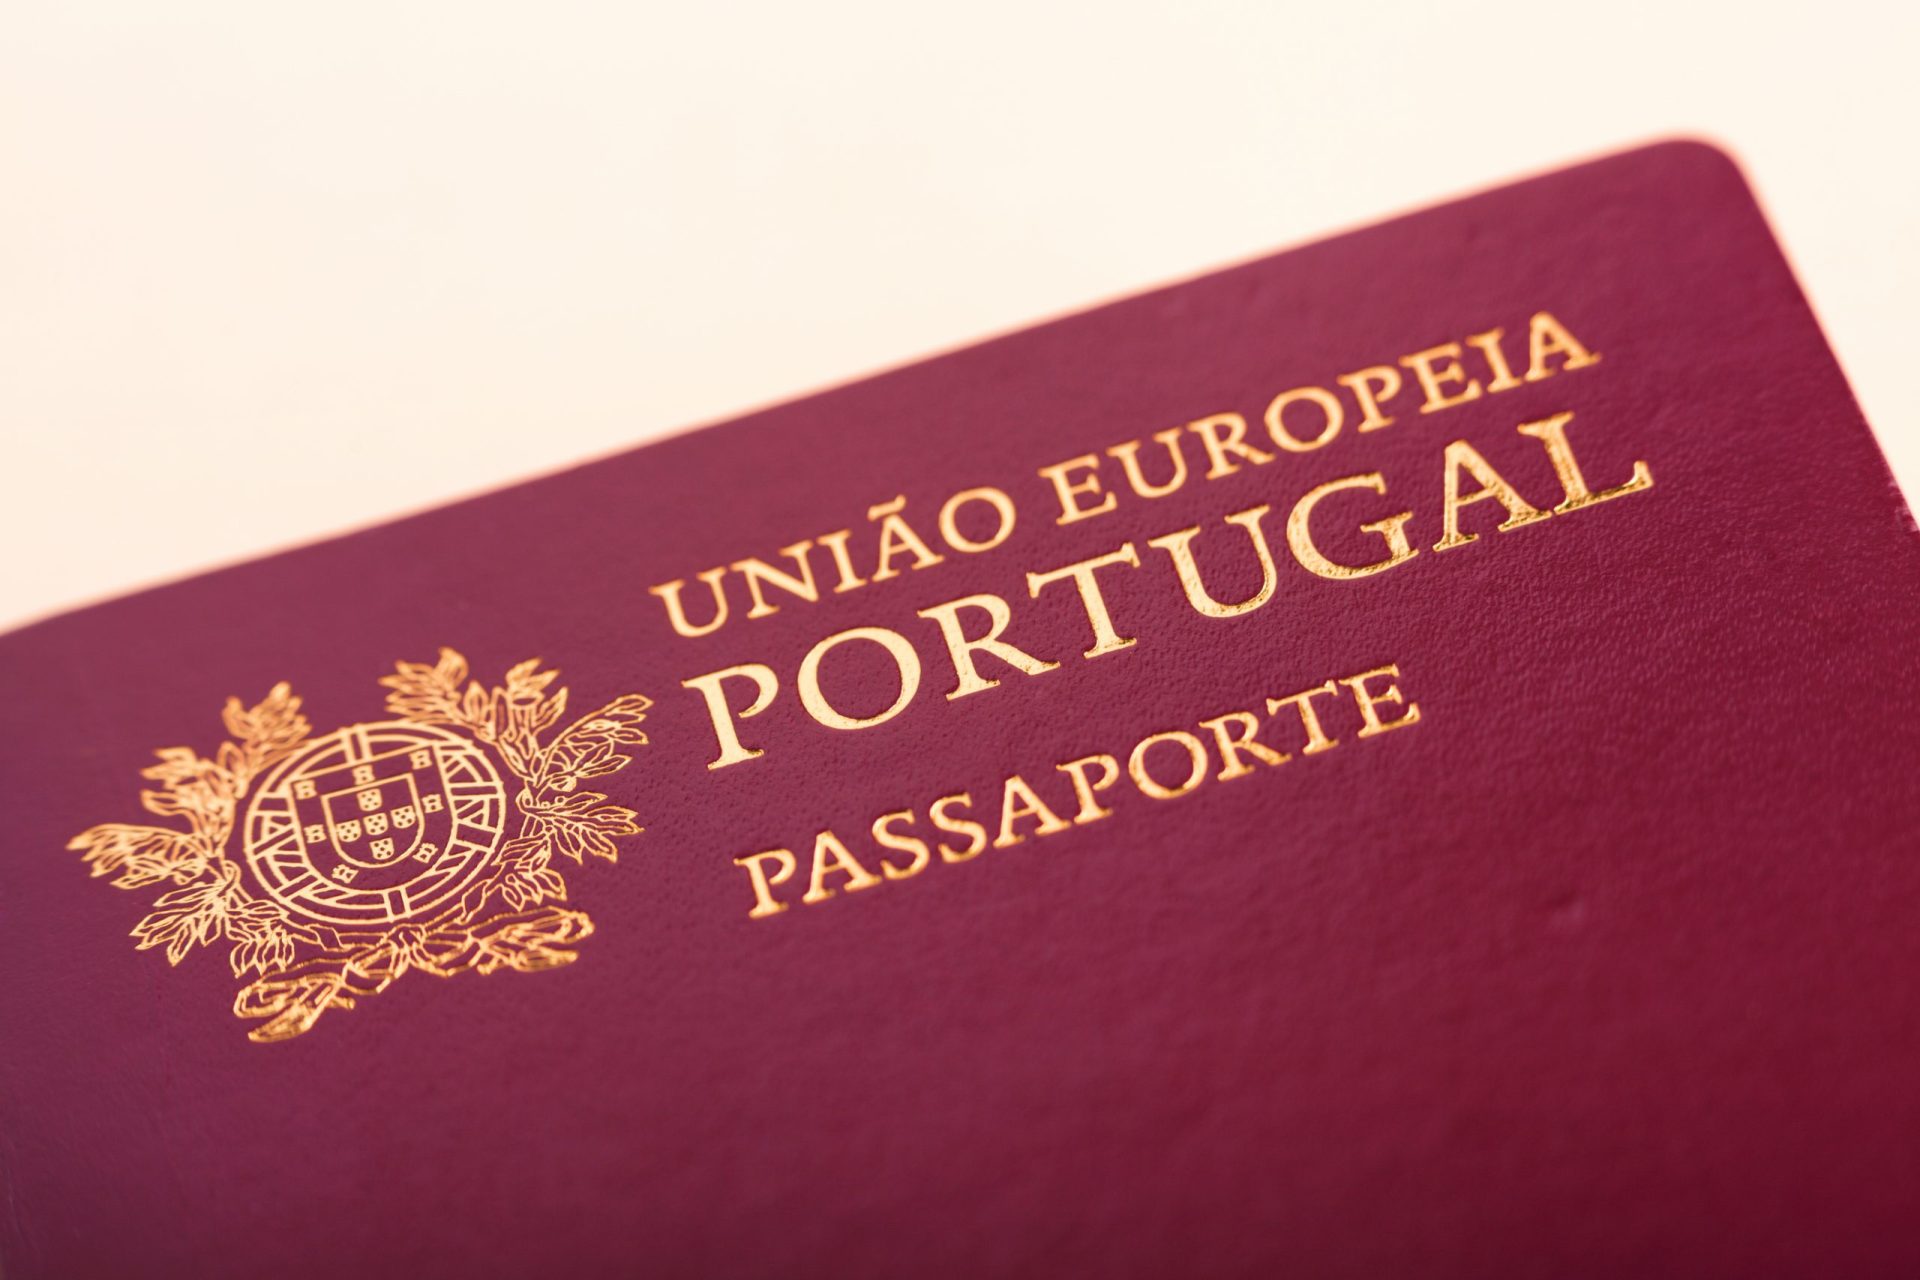 Funcionário consular falsificava vistos para permitir entrada de jogadores guineenses em Portugal